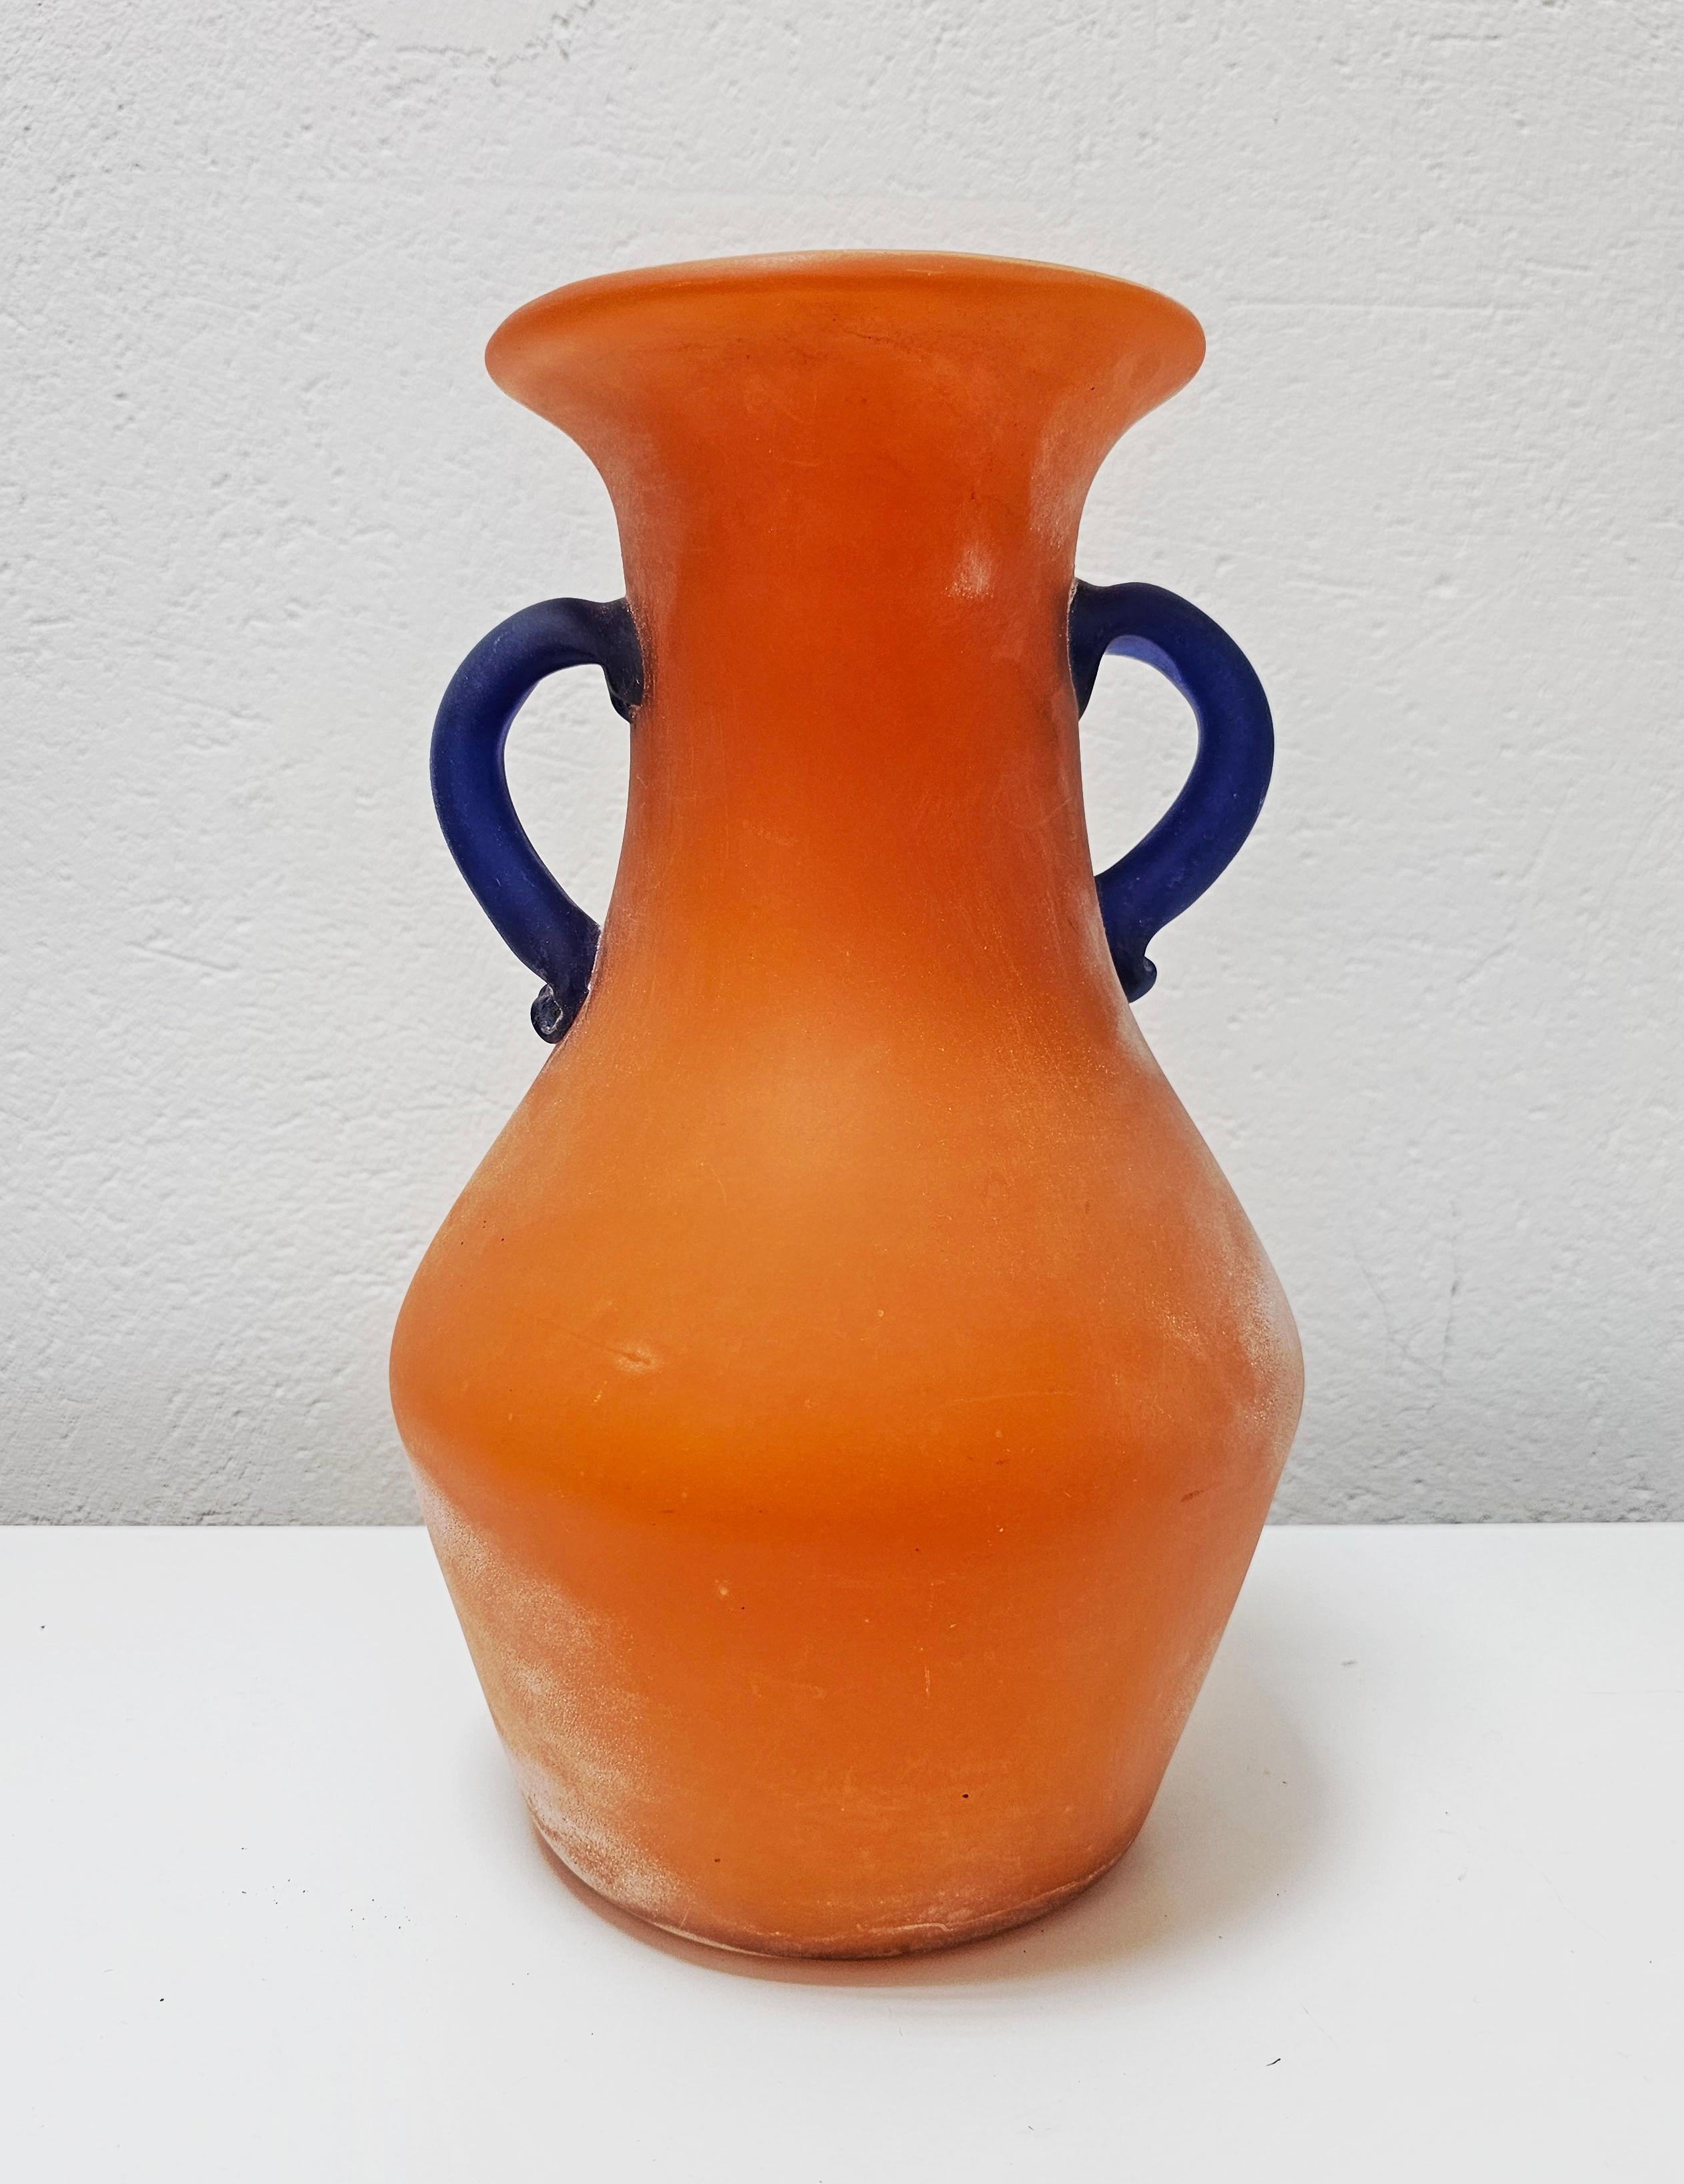 Vous trouverez dans cette annonce un superbe et rare vase Scavo en verre de Murano de très grande taille, réalisé en verre orange vibrant, avec les anses en verre bleu profond. Le vase a été conçu par Carlo Moretti dans les années 1970 dans